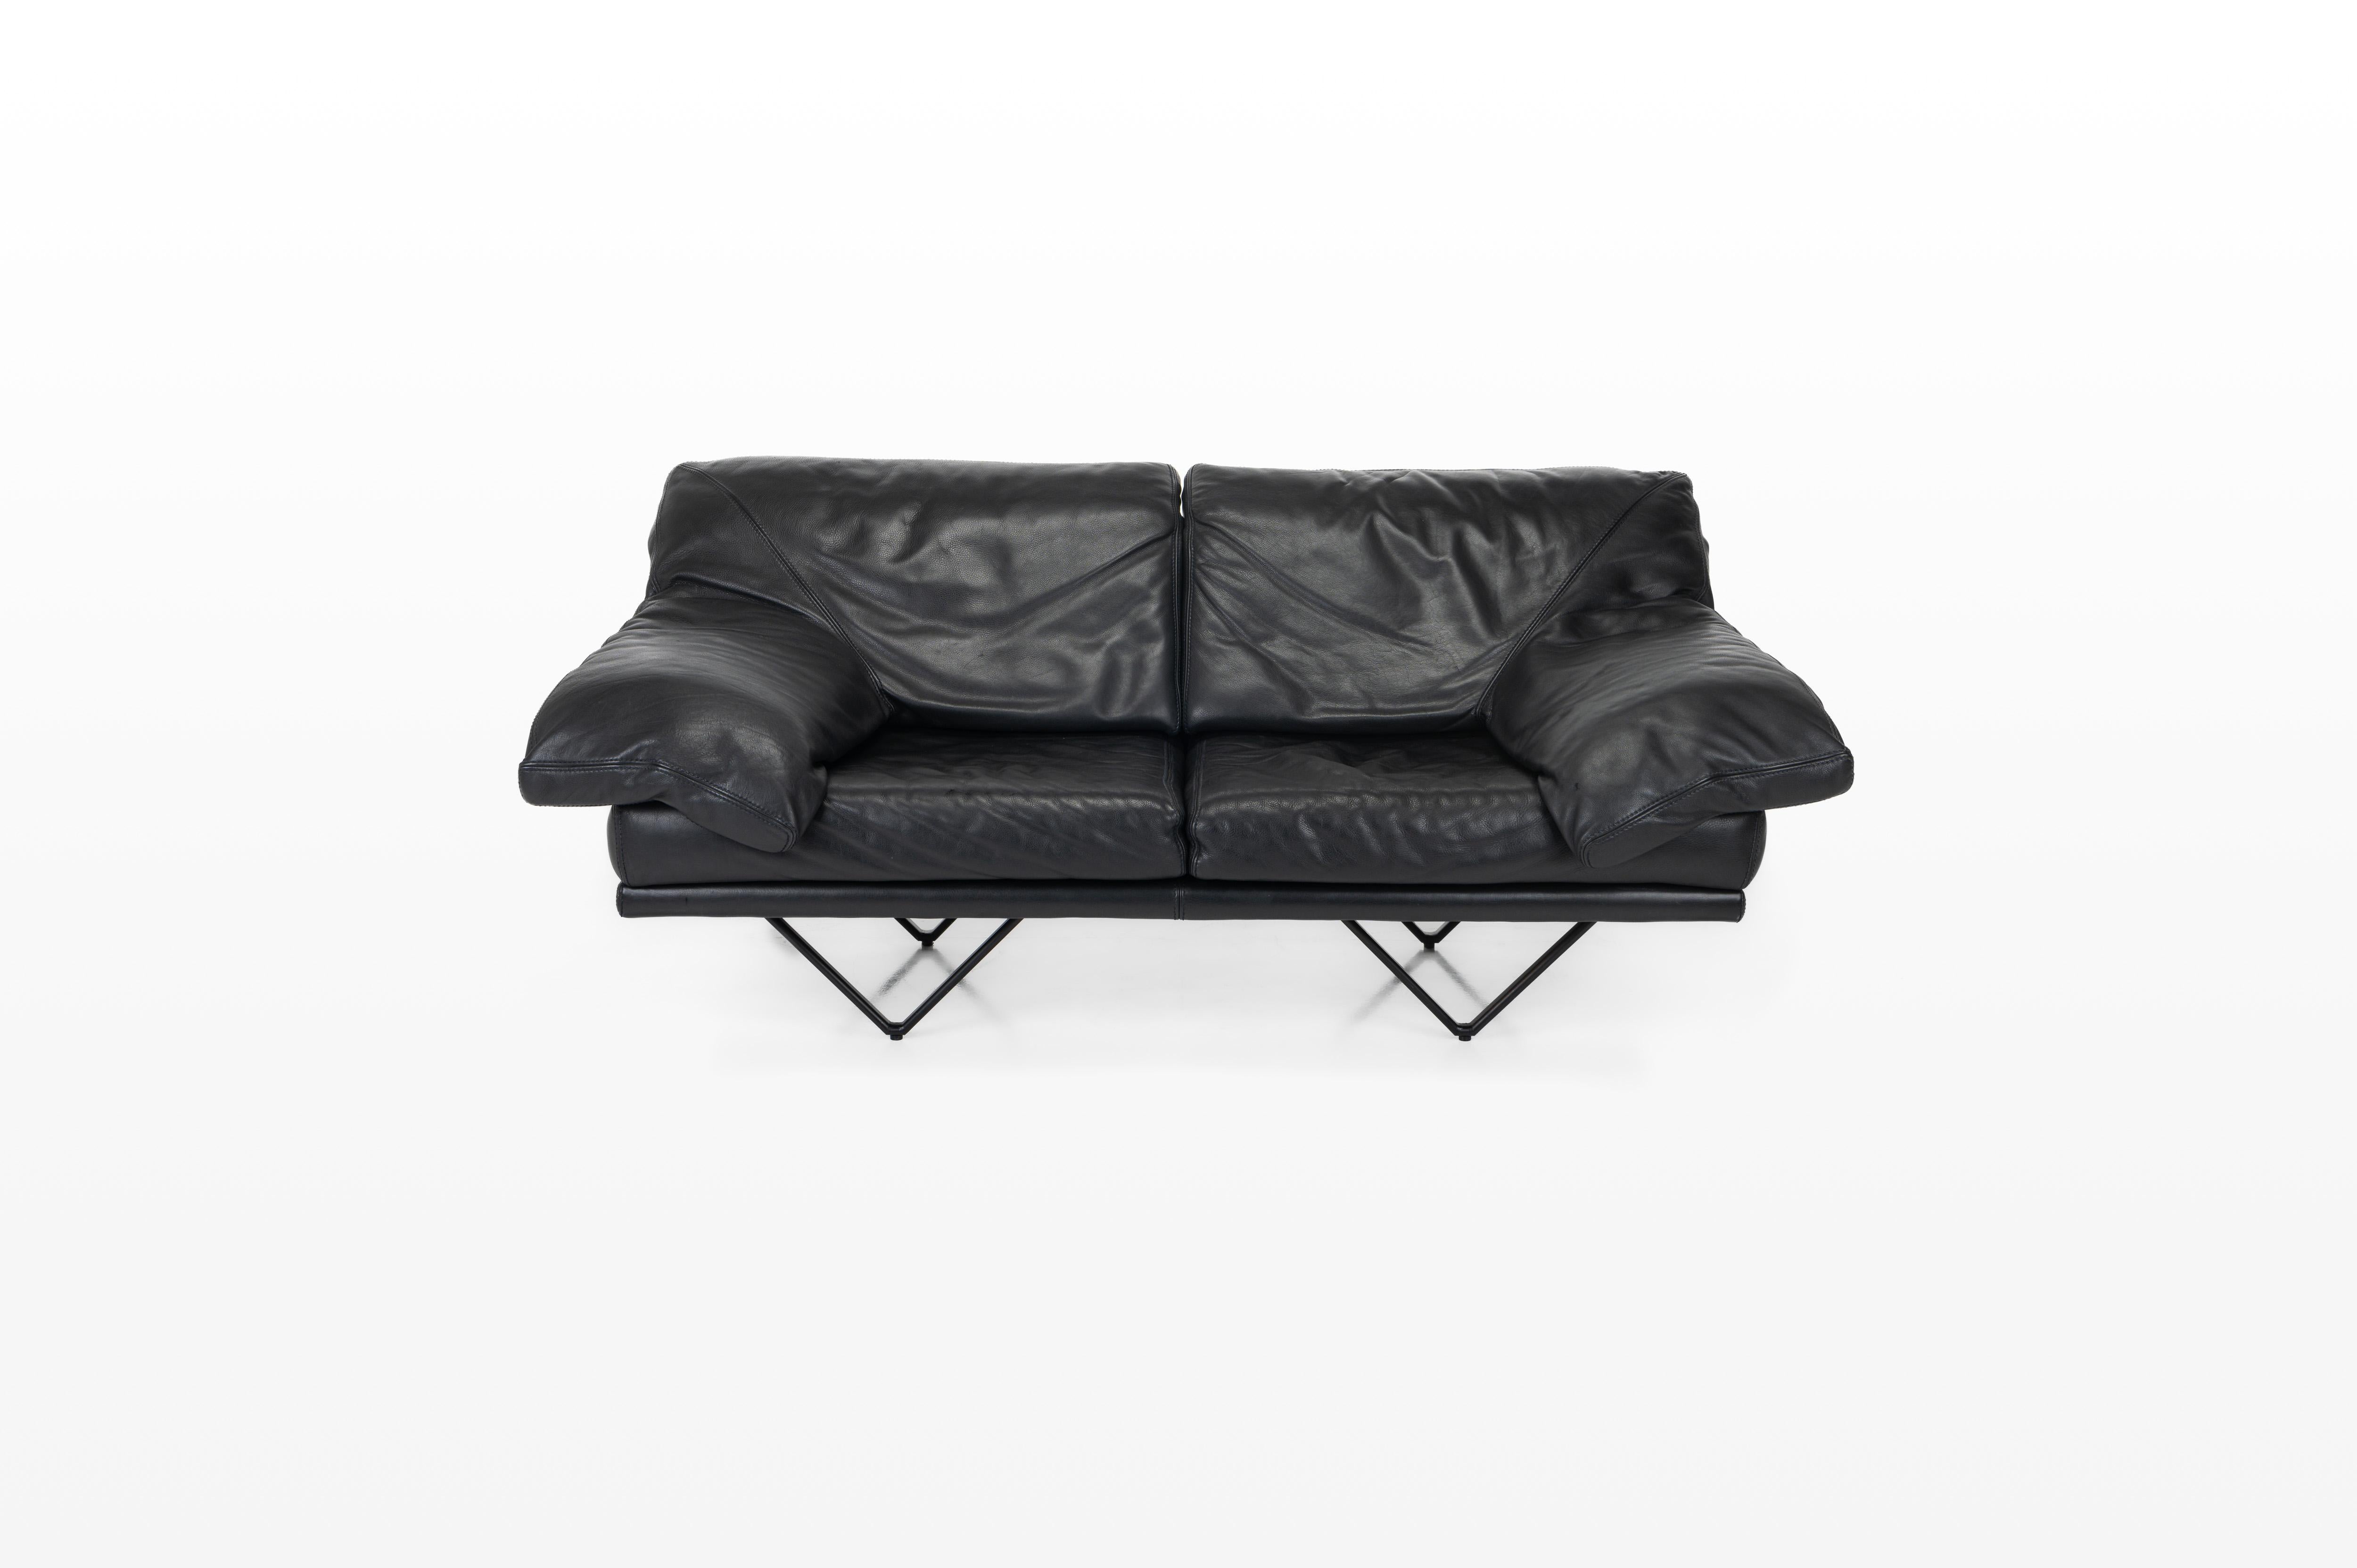 Canapé vintage en cuir 'Cornelius' produit par Durlet, Belgique années 1980. Ce canapé en cuir noir est en très bon état.

Dimensions :
L : 185 cm
D : 100 cm
H : 85 cm